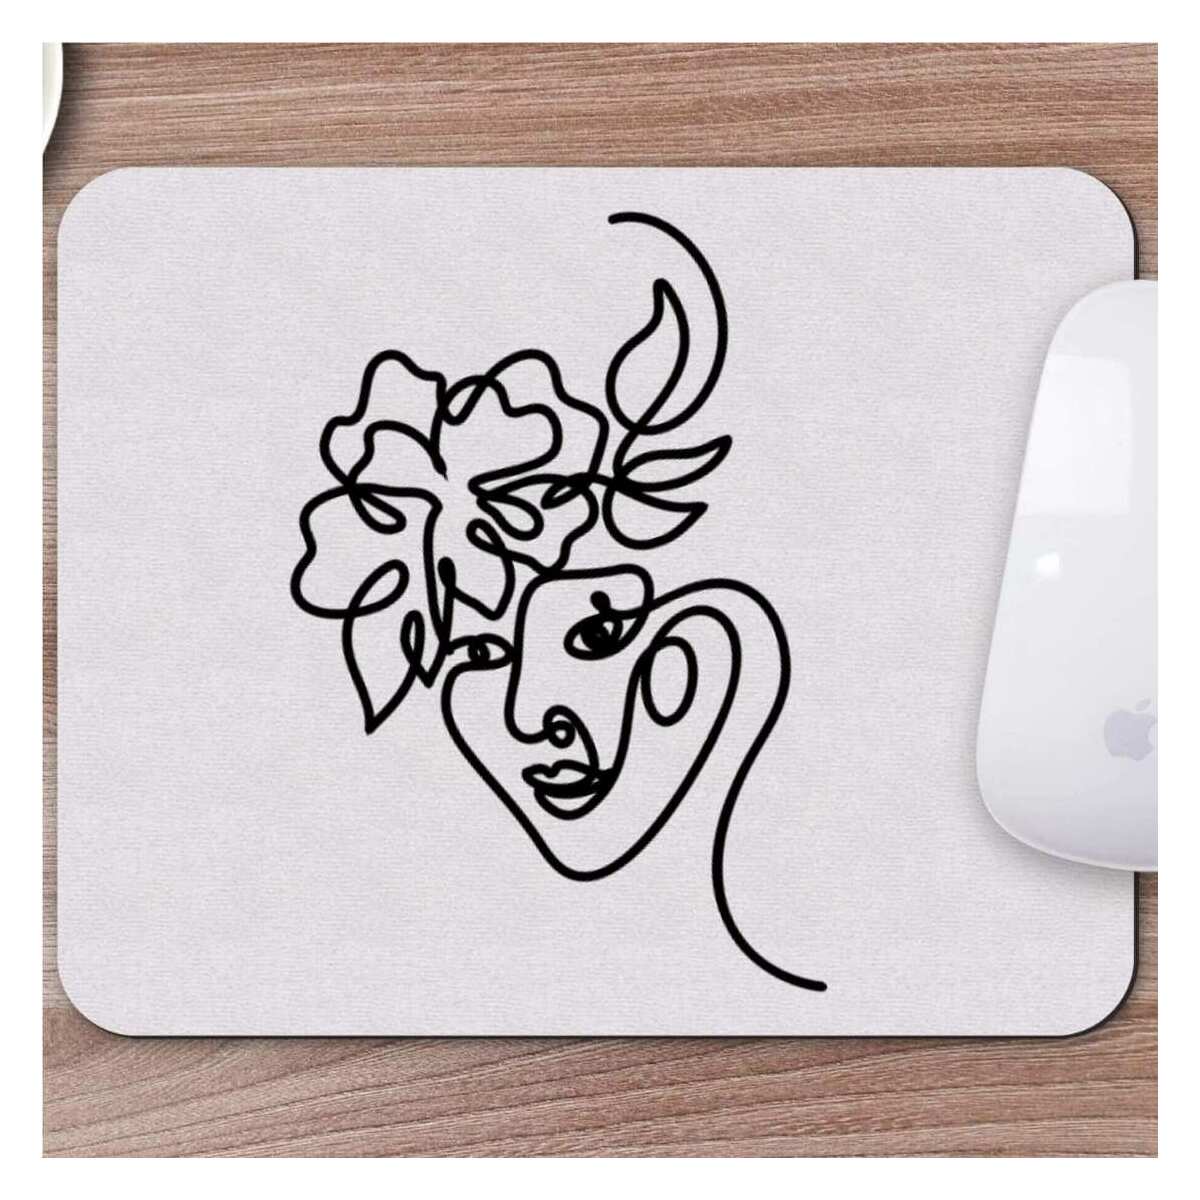 Karakalem Çizimi Soyut Yüz Tasarımlı Mousepad -5